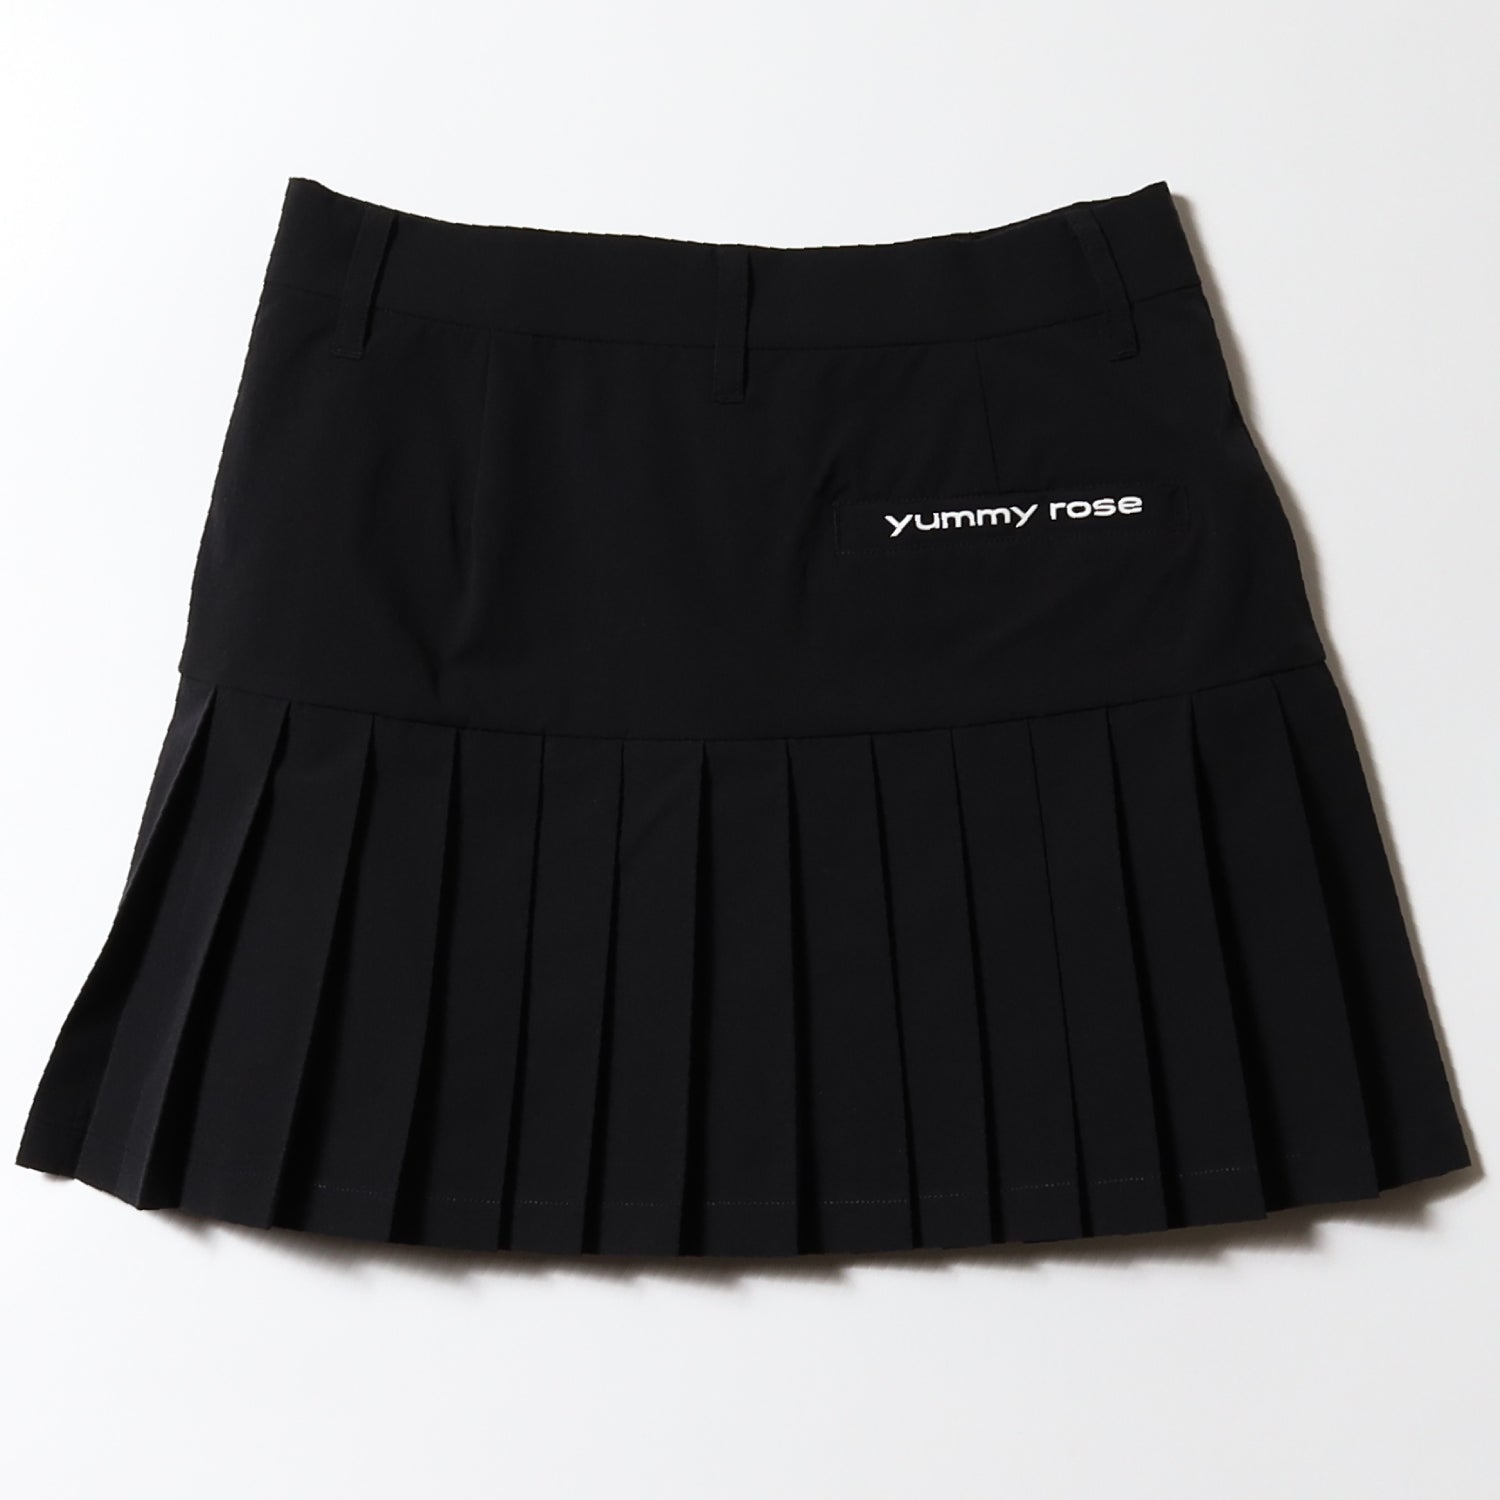 One Way Skirt